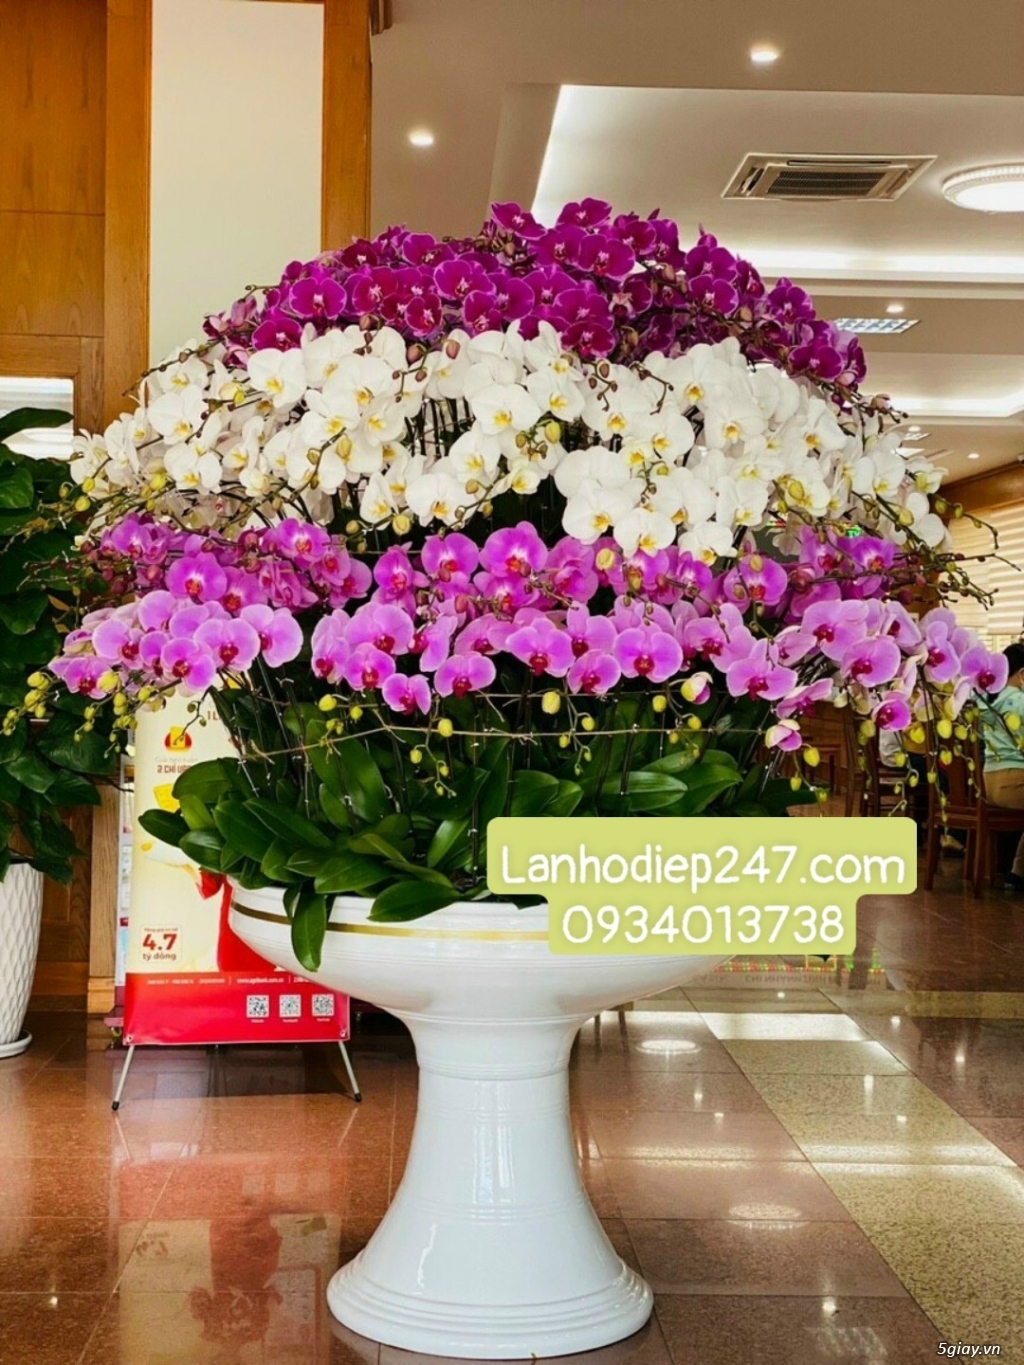 Shop Lan Hồ Điệp Sài Gòn 247 chuyên cung cấp hoa tươi uy tín số 1 HCM - 12